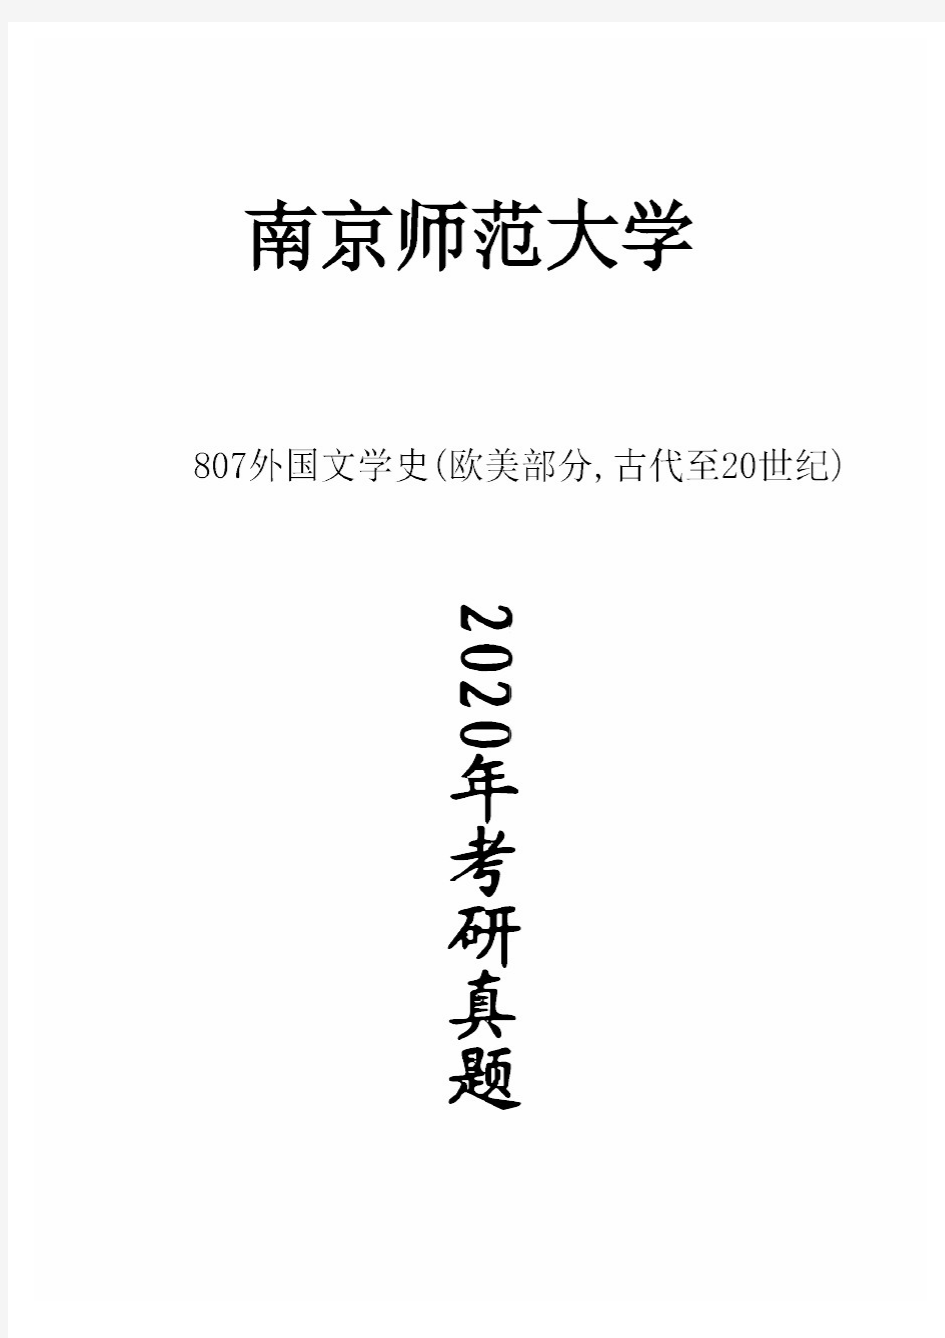 南京师范大学807外国文学史(欧美部分,古代至20世纪)2020年考研真题试卷试题